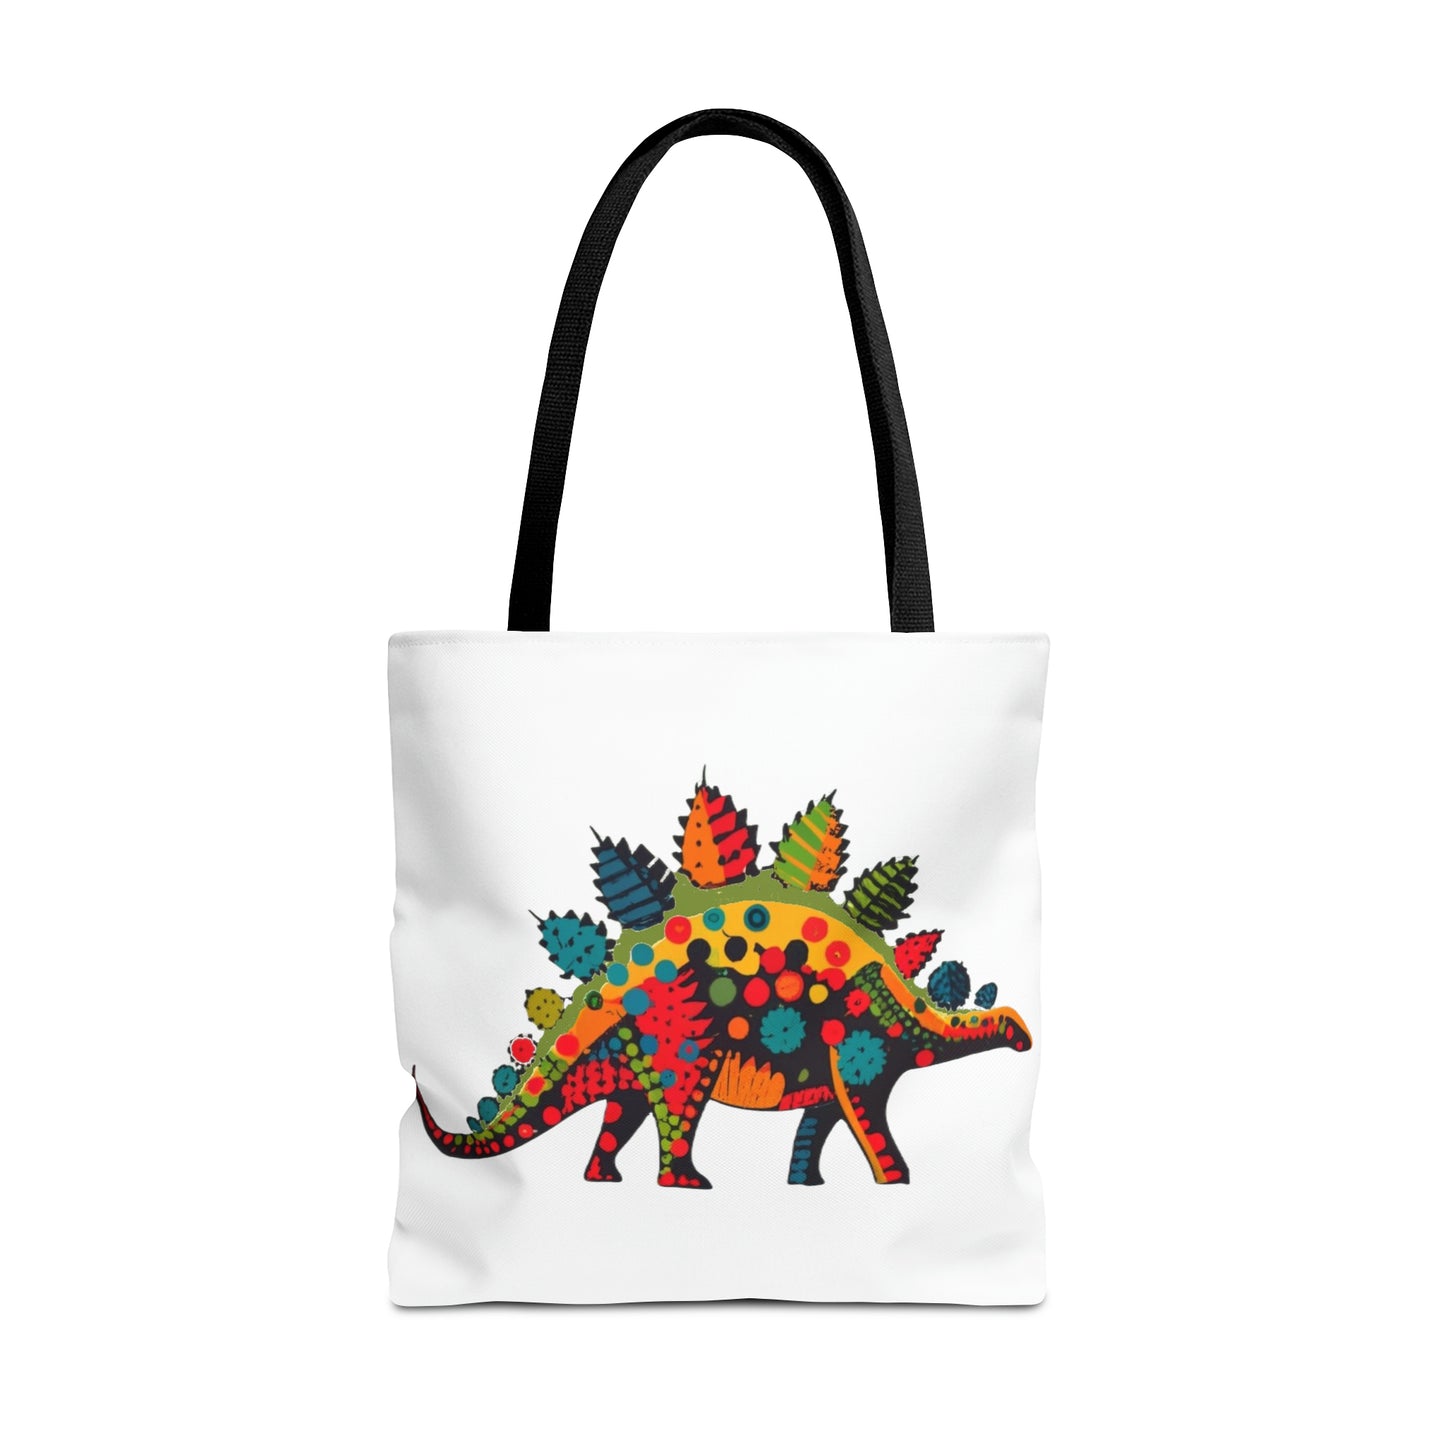 Polka Dot Party Pal: Vibrant Stegosaurus Tote Bag